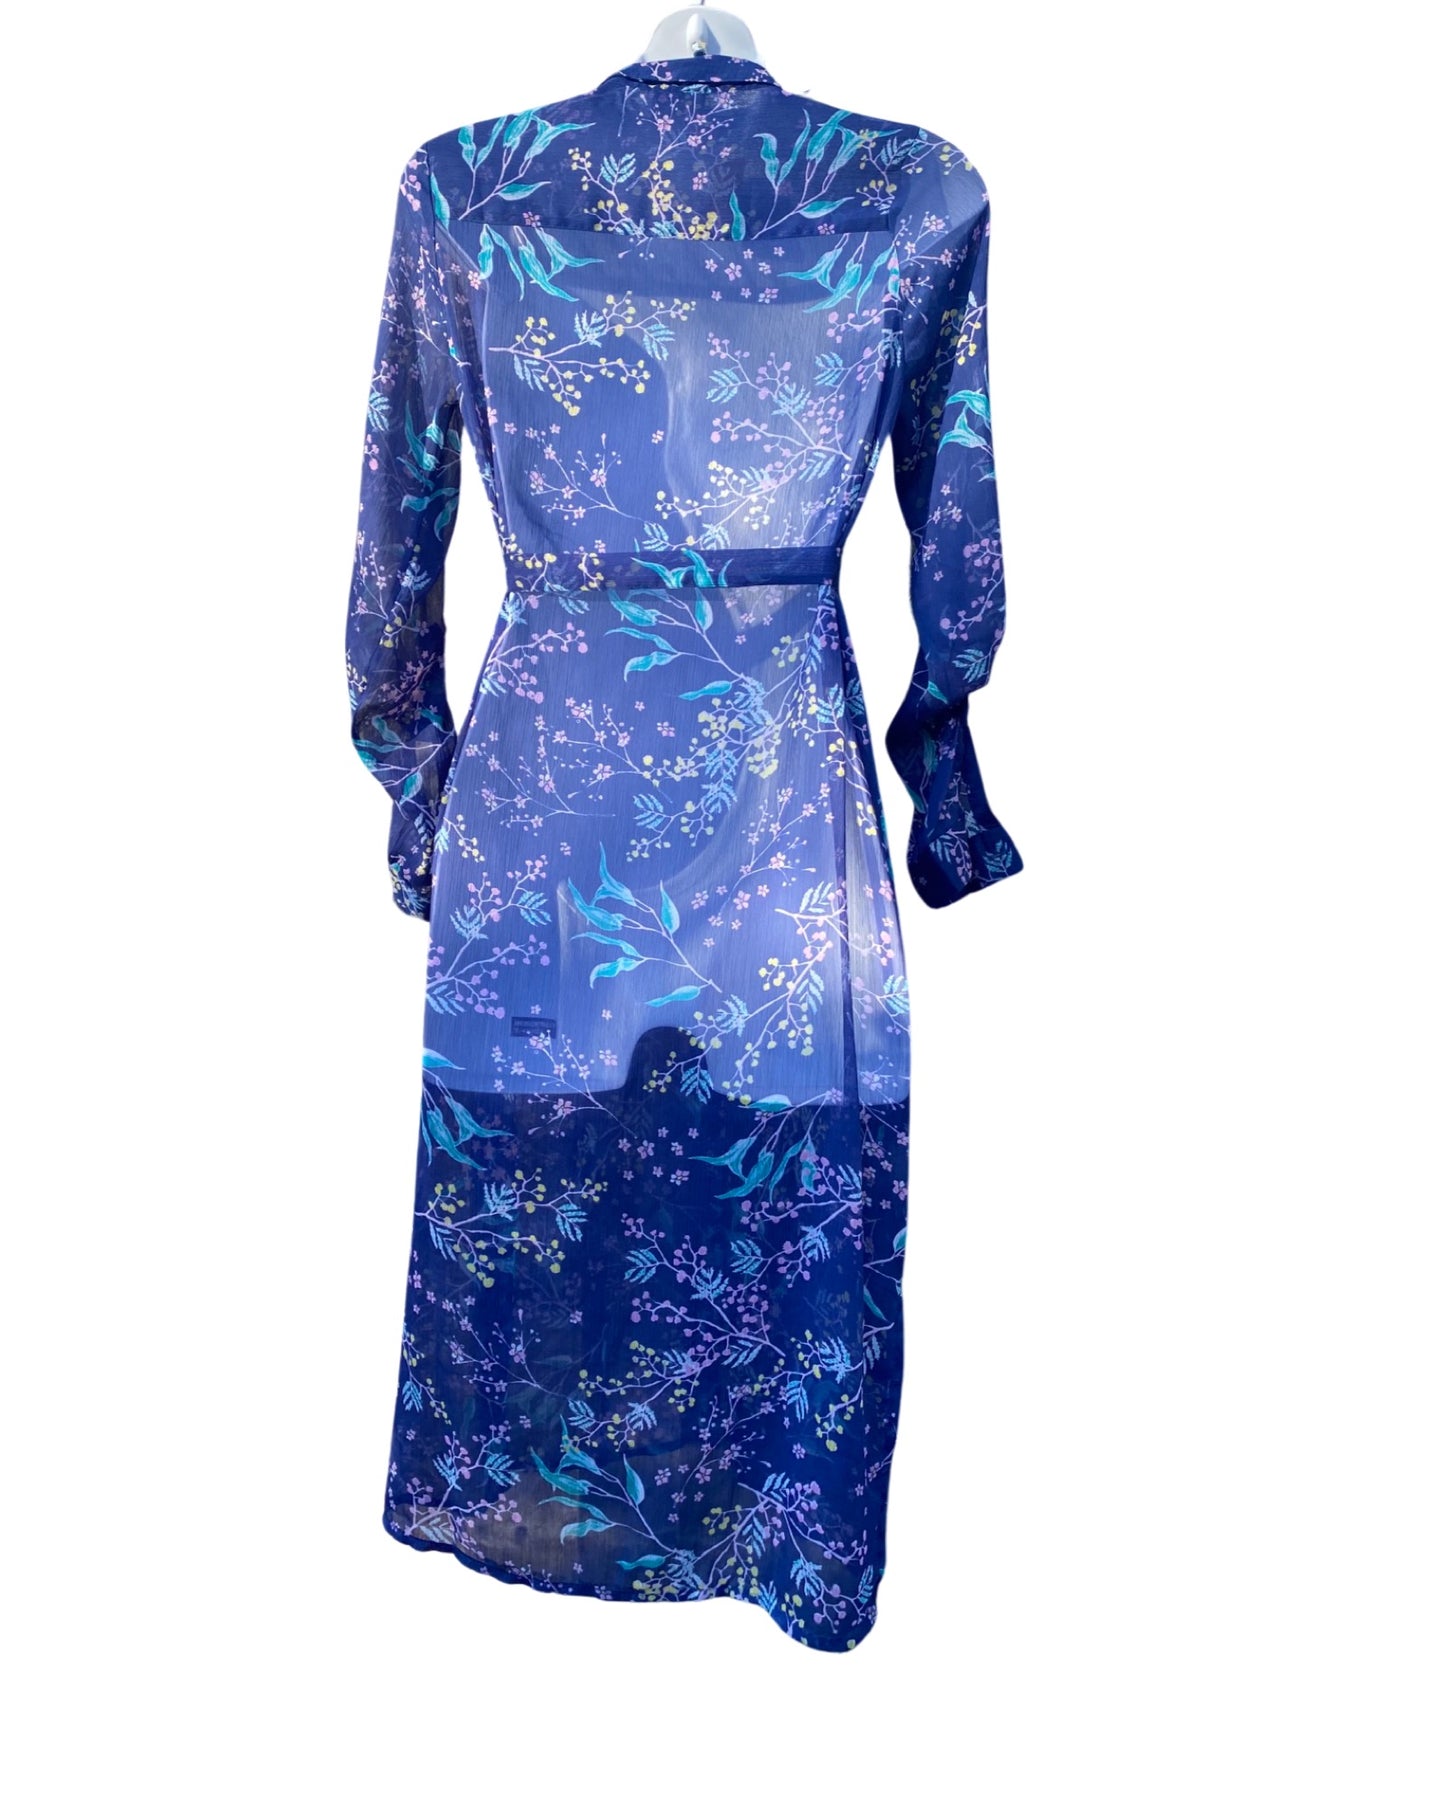 Mamalicious maternity sheer floral print shirt maxi dress (size S)